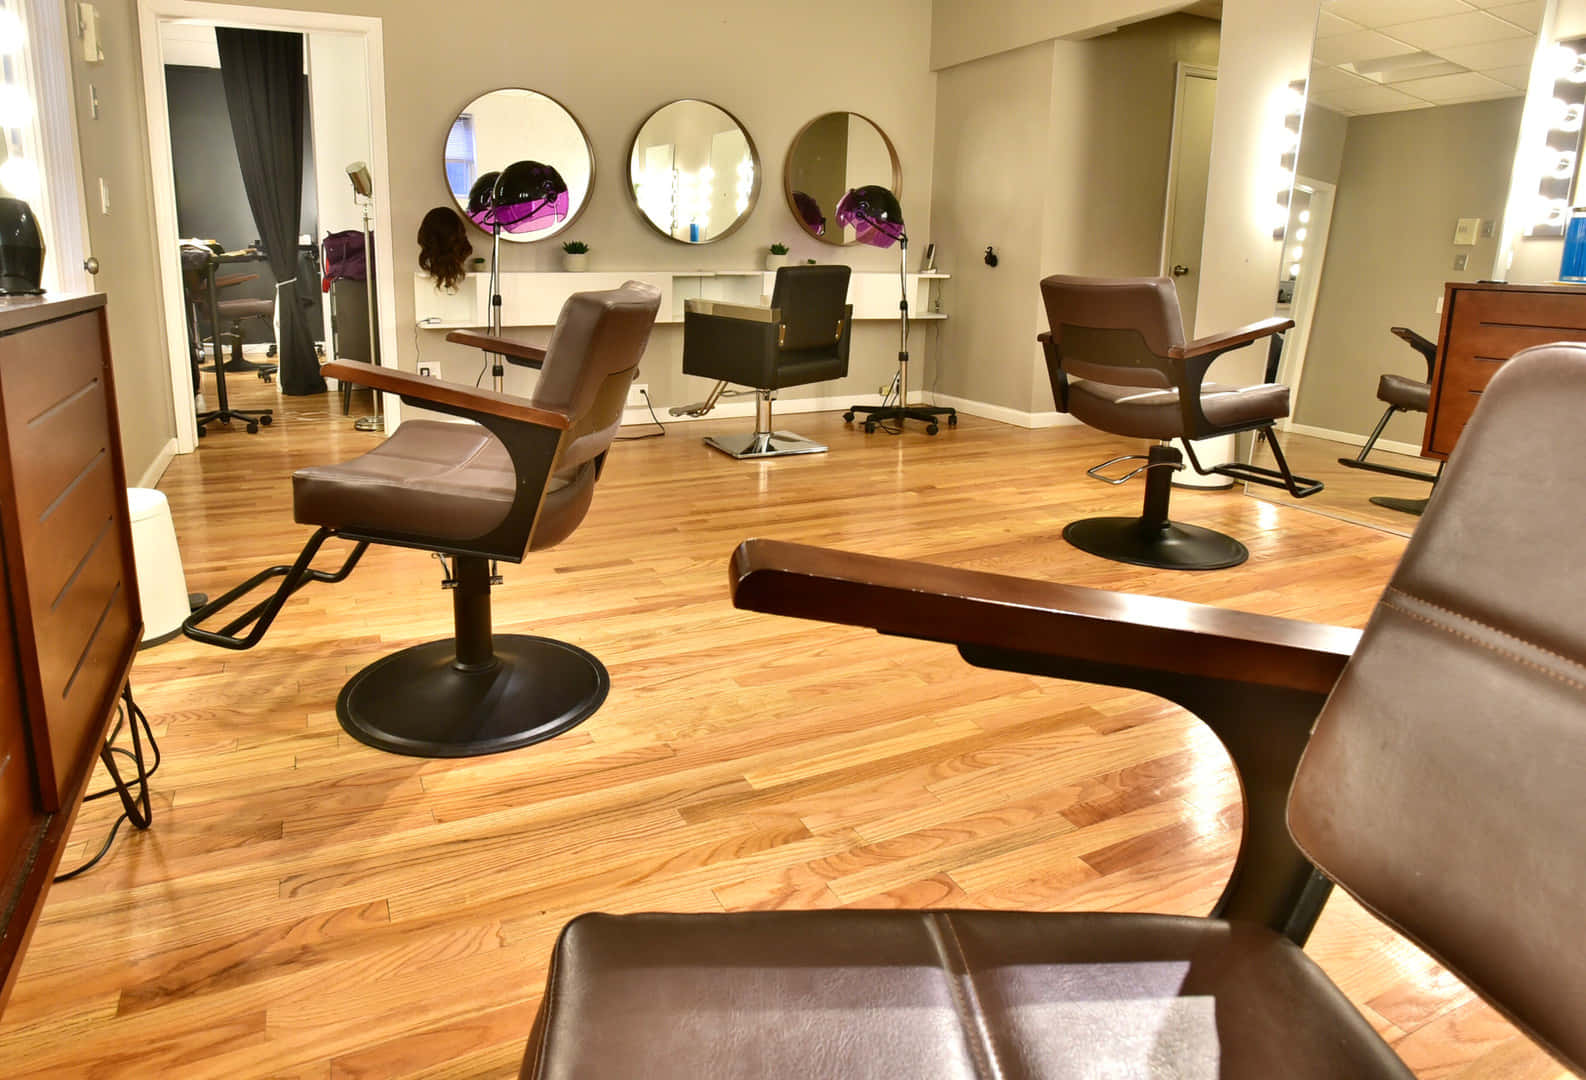 An Interior View of a Hair Salon